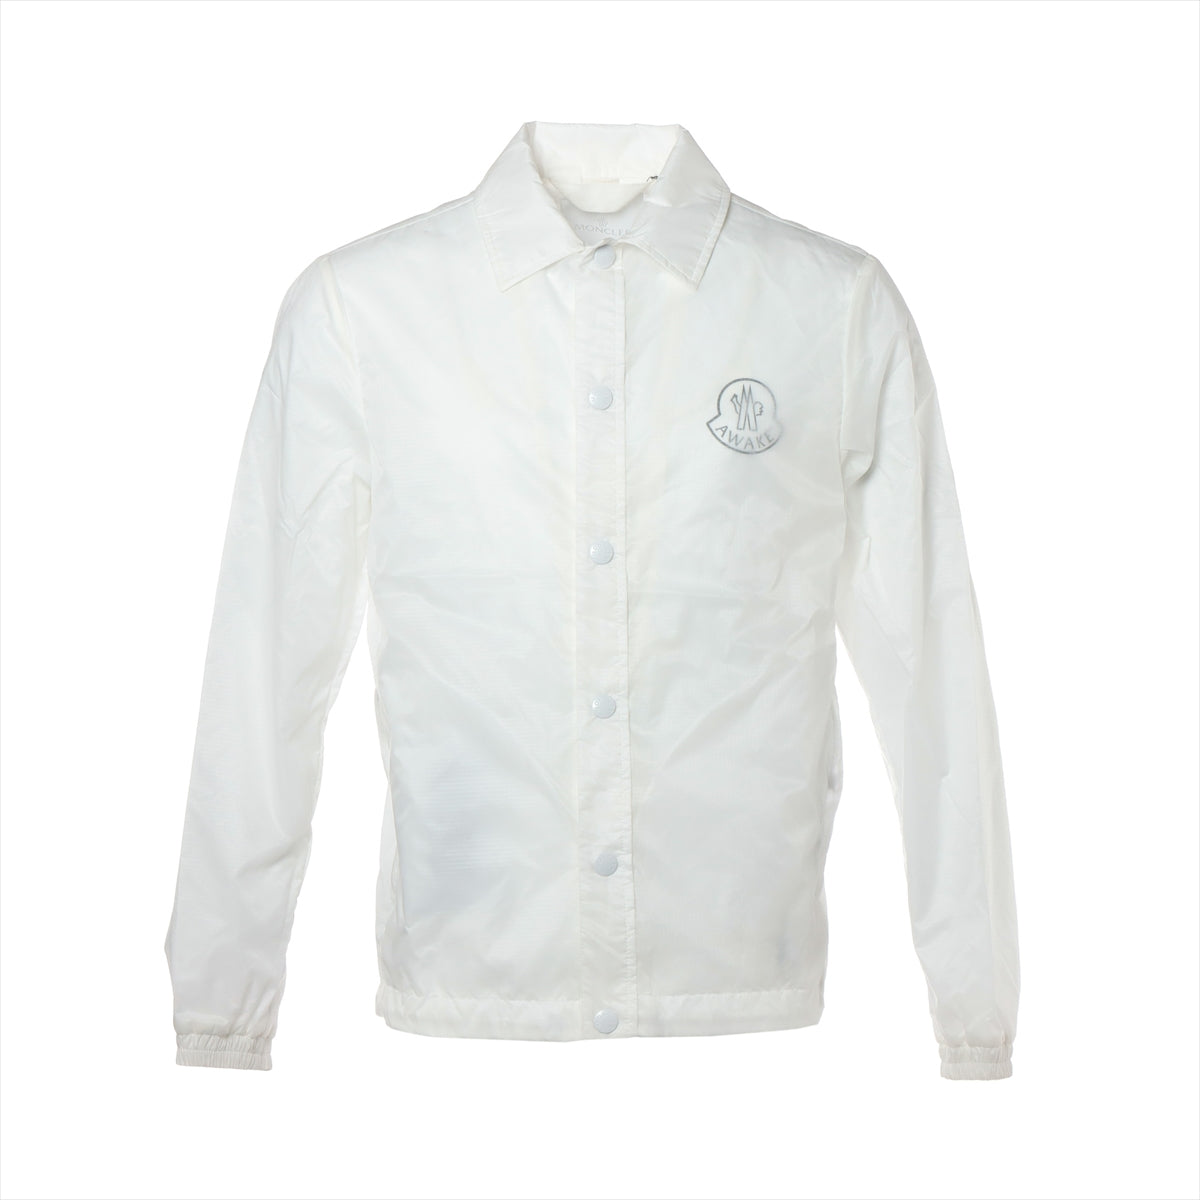 Moncler Genius 1952 x Awake 19-year Nylon Jacket 0 Men's White  SANGAY Genius tag out of stock